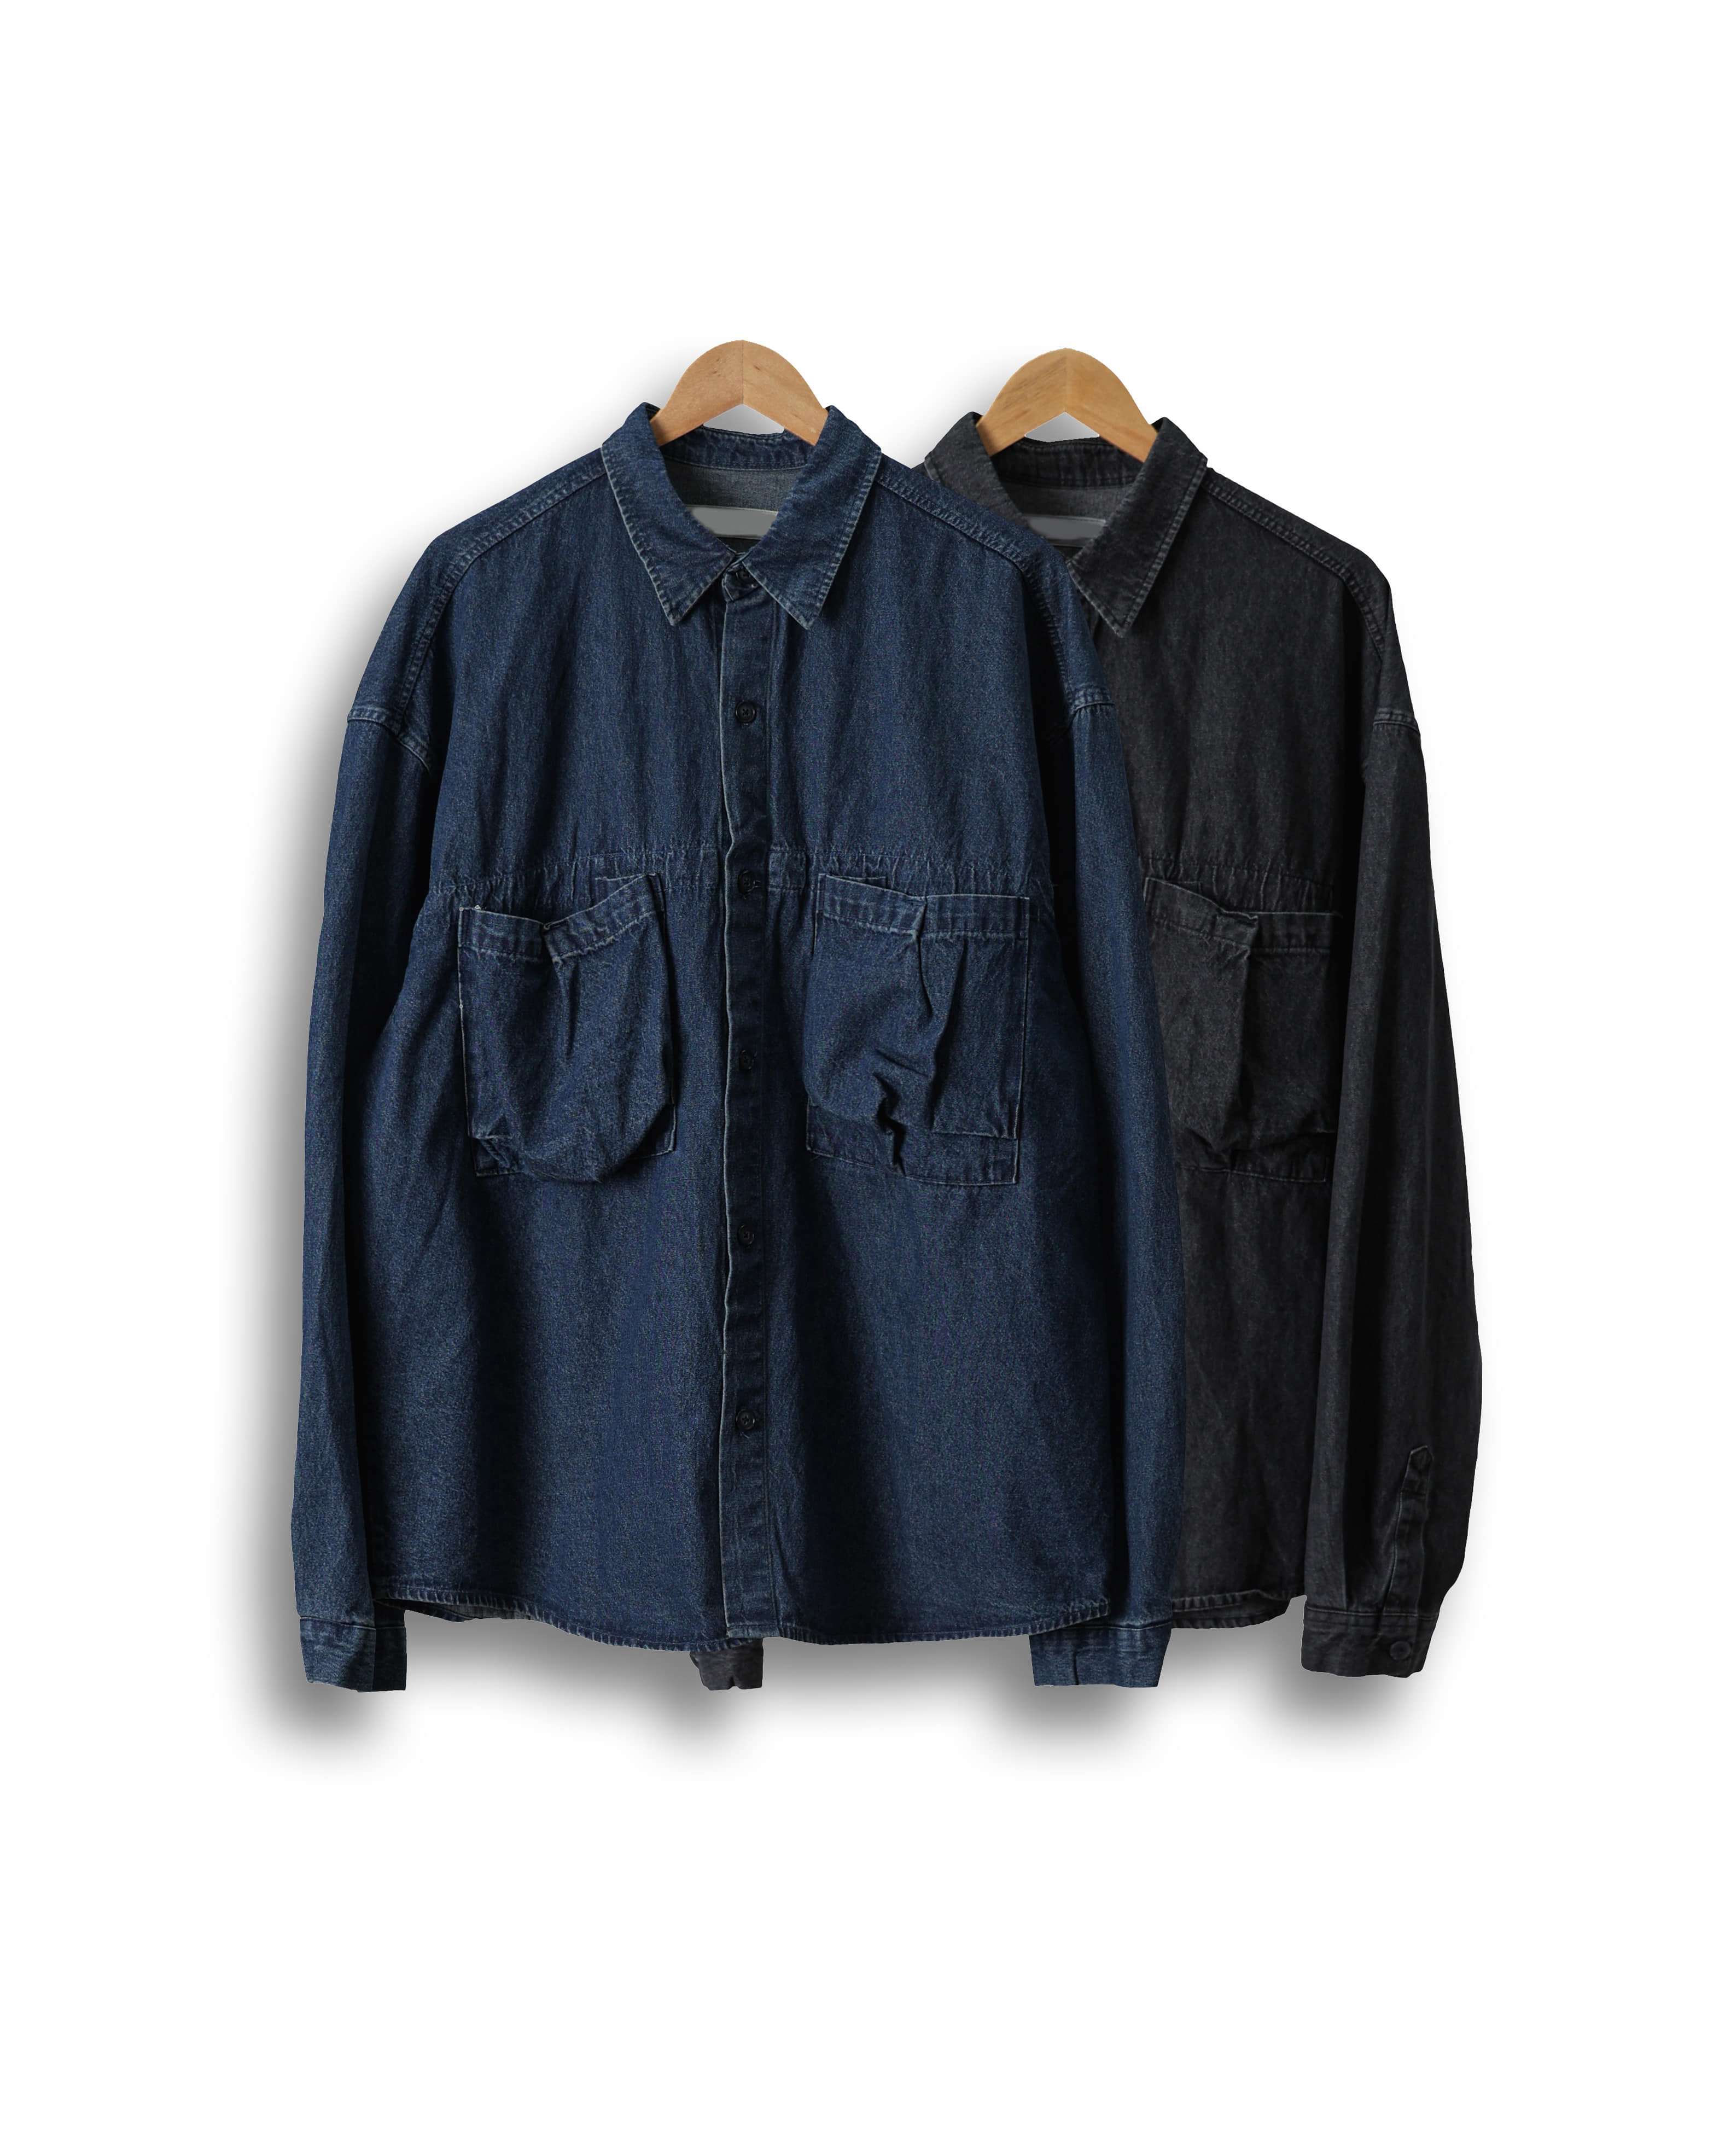 FAMS Mention Pocket Denim Shirts Jacket (Black Denim/Blue Denim)